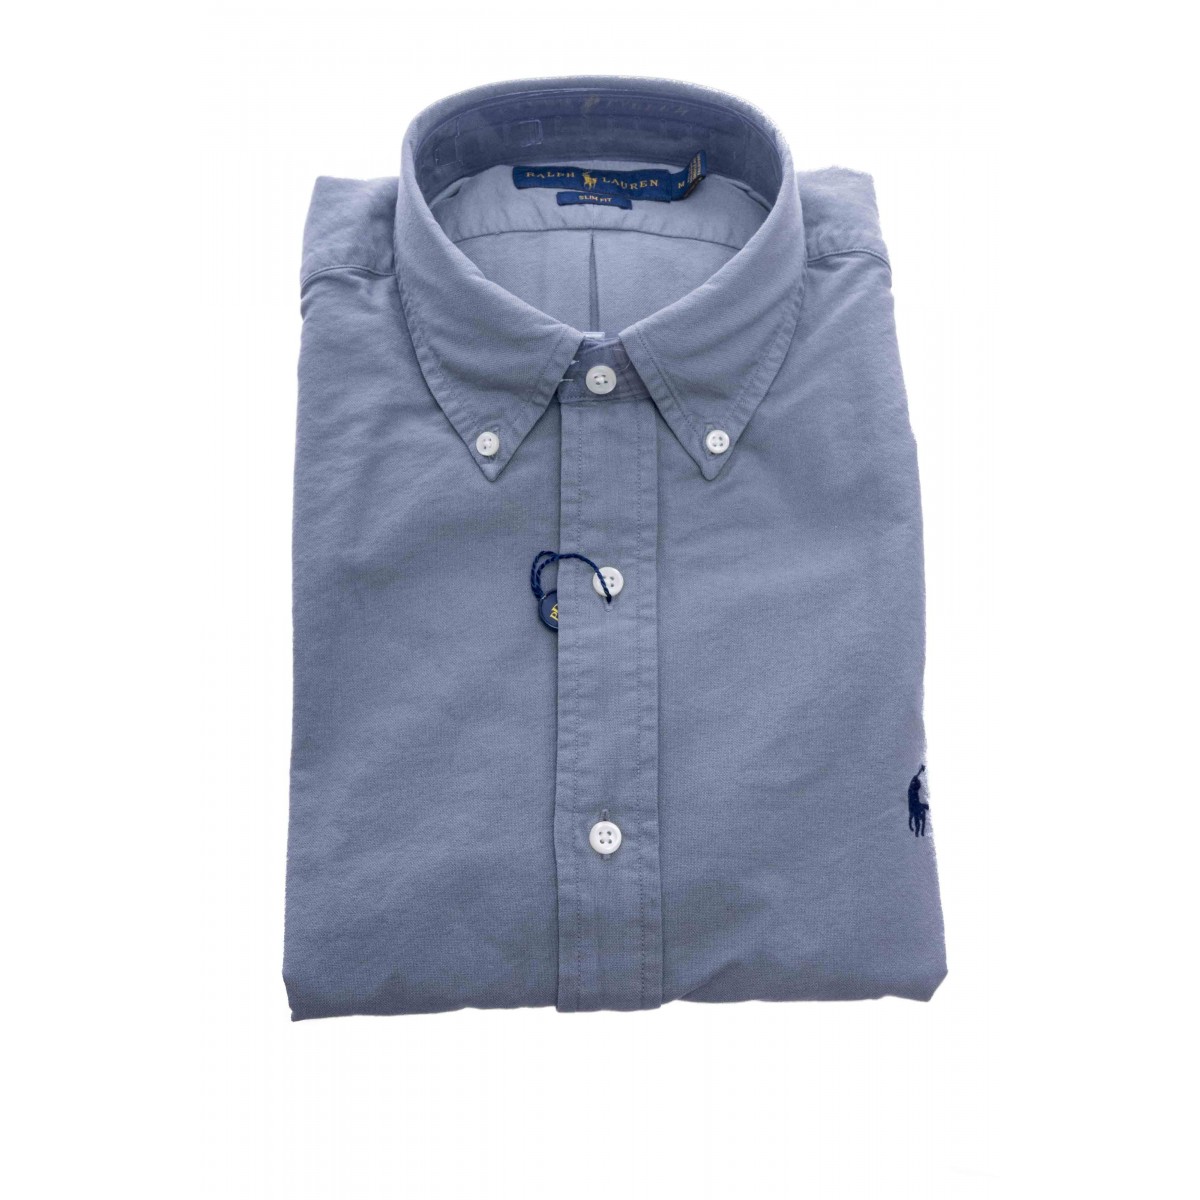 Camicia - 684871 camicia chino lavata slim fit